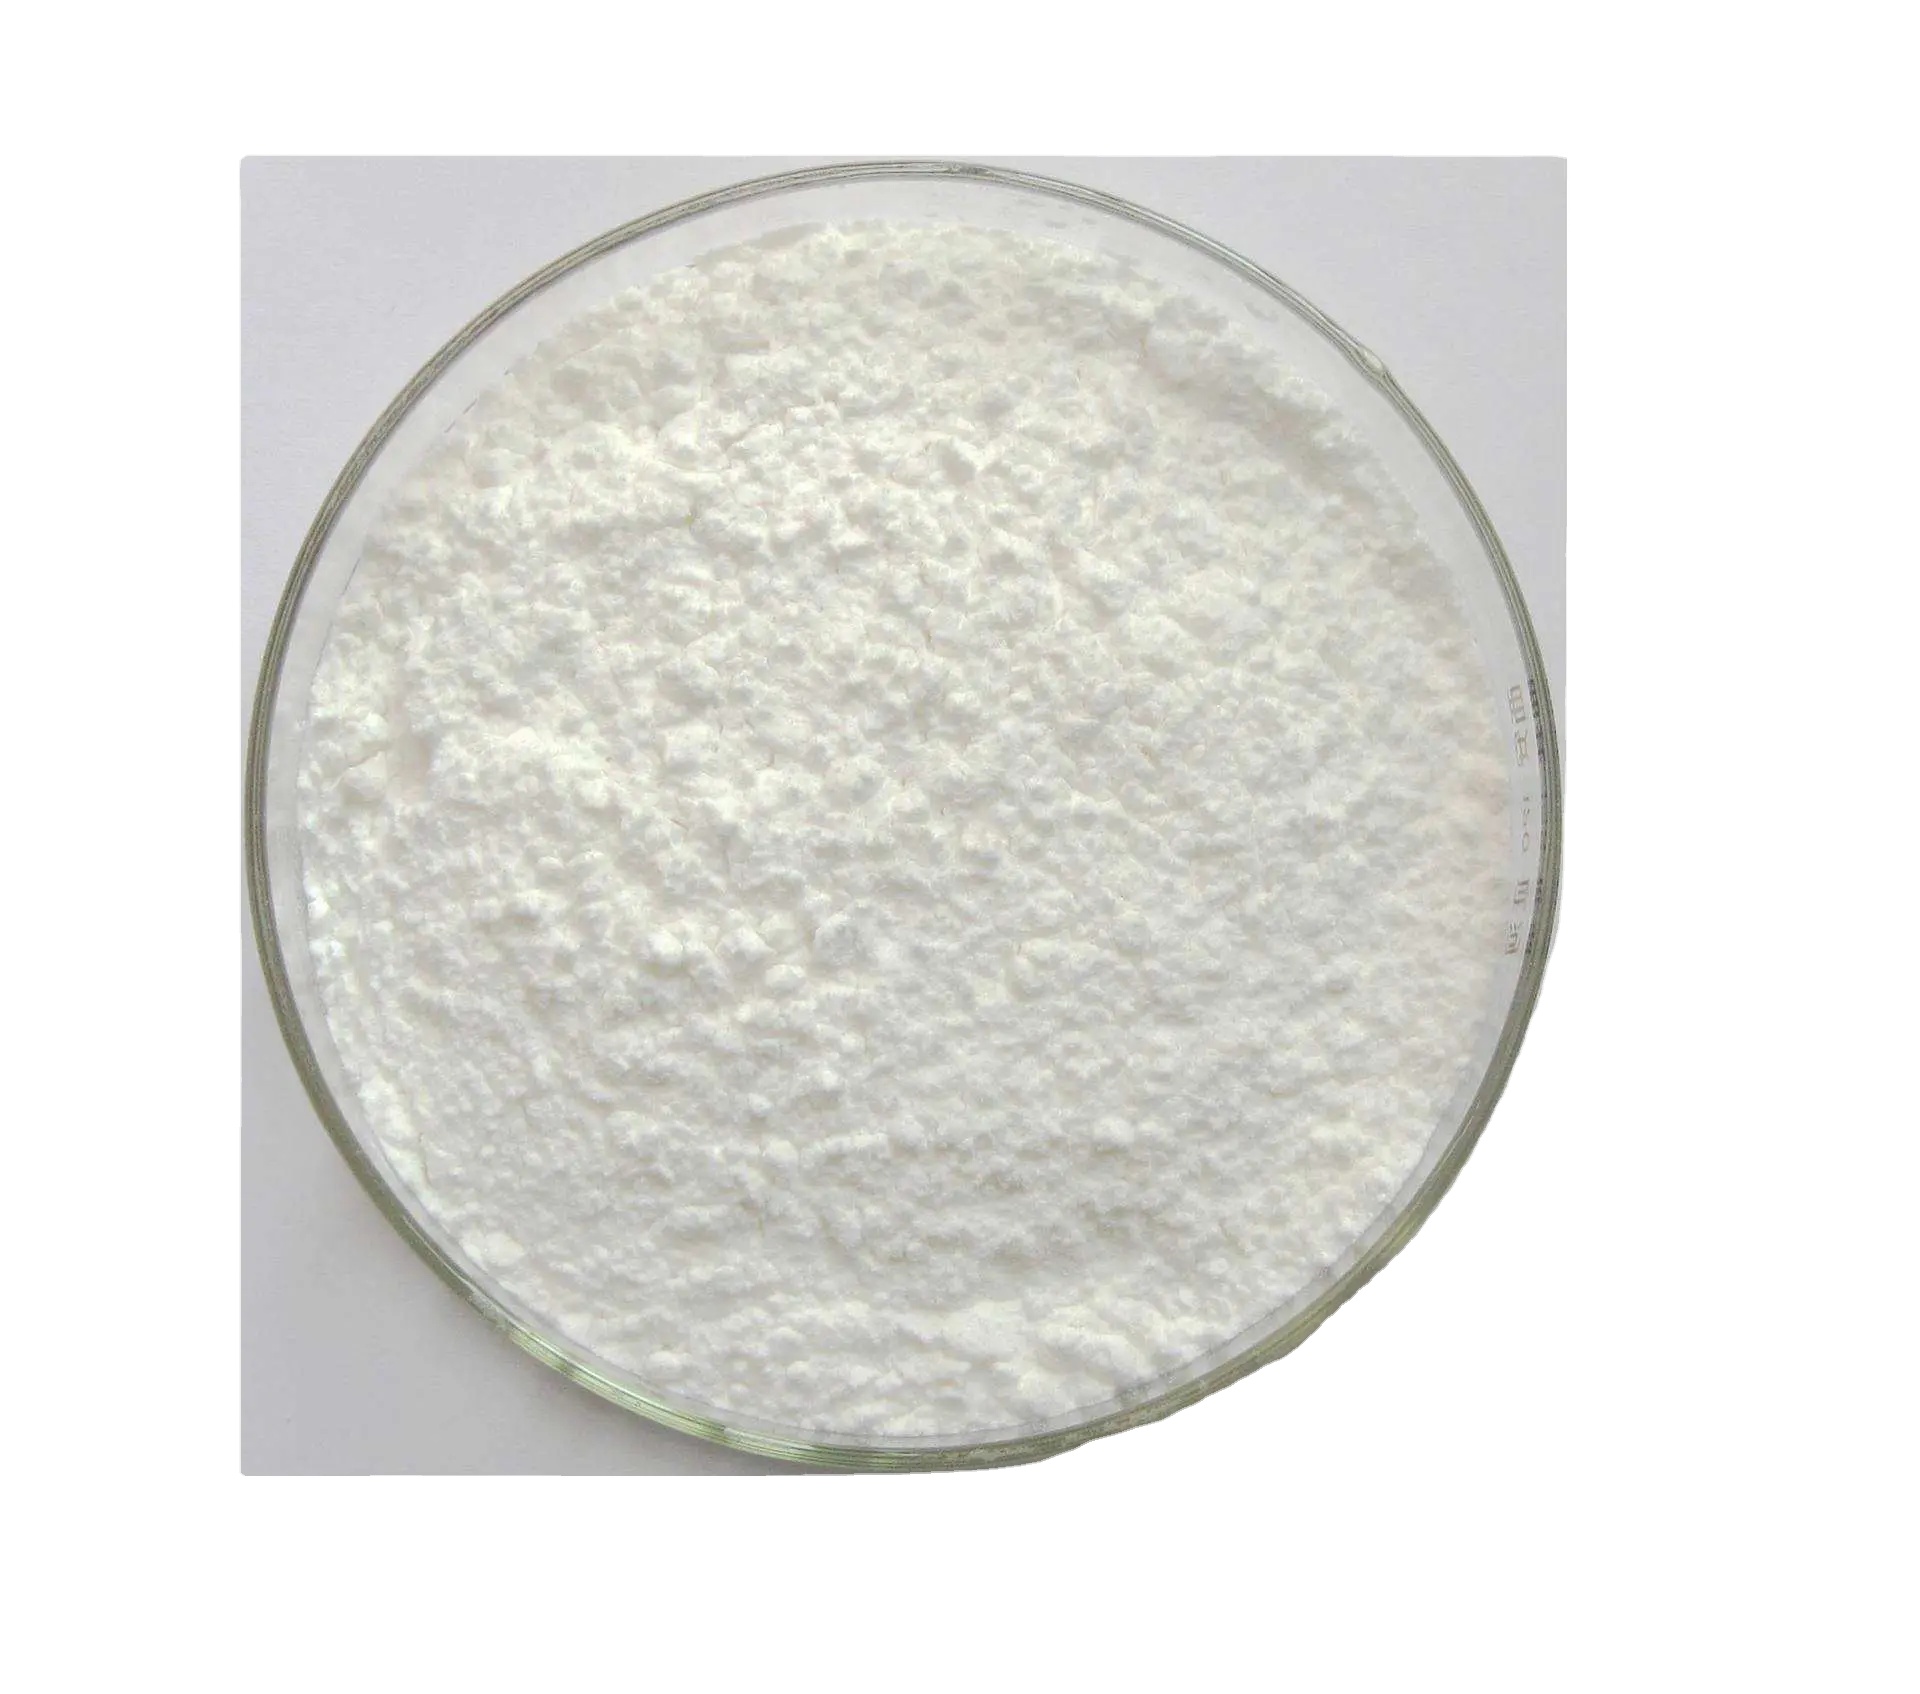 Купете Избелващ агент 4,4''-бис(хлорометил)-1,1''-бифенил Cas1667
-10-3,Избелващ агент 4,4''-бис(хлорометил)-1,1''-бифенил Cas1667
-10-3 Цена,Избелващ агент 4,4''-бис(хлорометил)-1,1''-бифенил Cas1667
-10-3 марка,Избелващ агент 4,4''-бис(хлорометил)-1,1''-бифенил Cas1667
-10-3 Производител,Избелващ агент 4,4''-бис(хлорометил)-1,1''-бифенил Cas1667
-10-3 Цитати. Избелващ агент 4,4''-бис(хлорометил)-1,1''-бифенил Cas1667
-10-3 Компания,